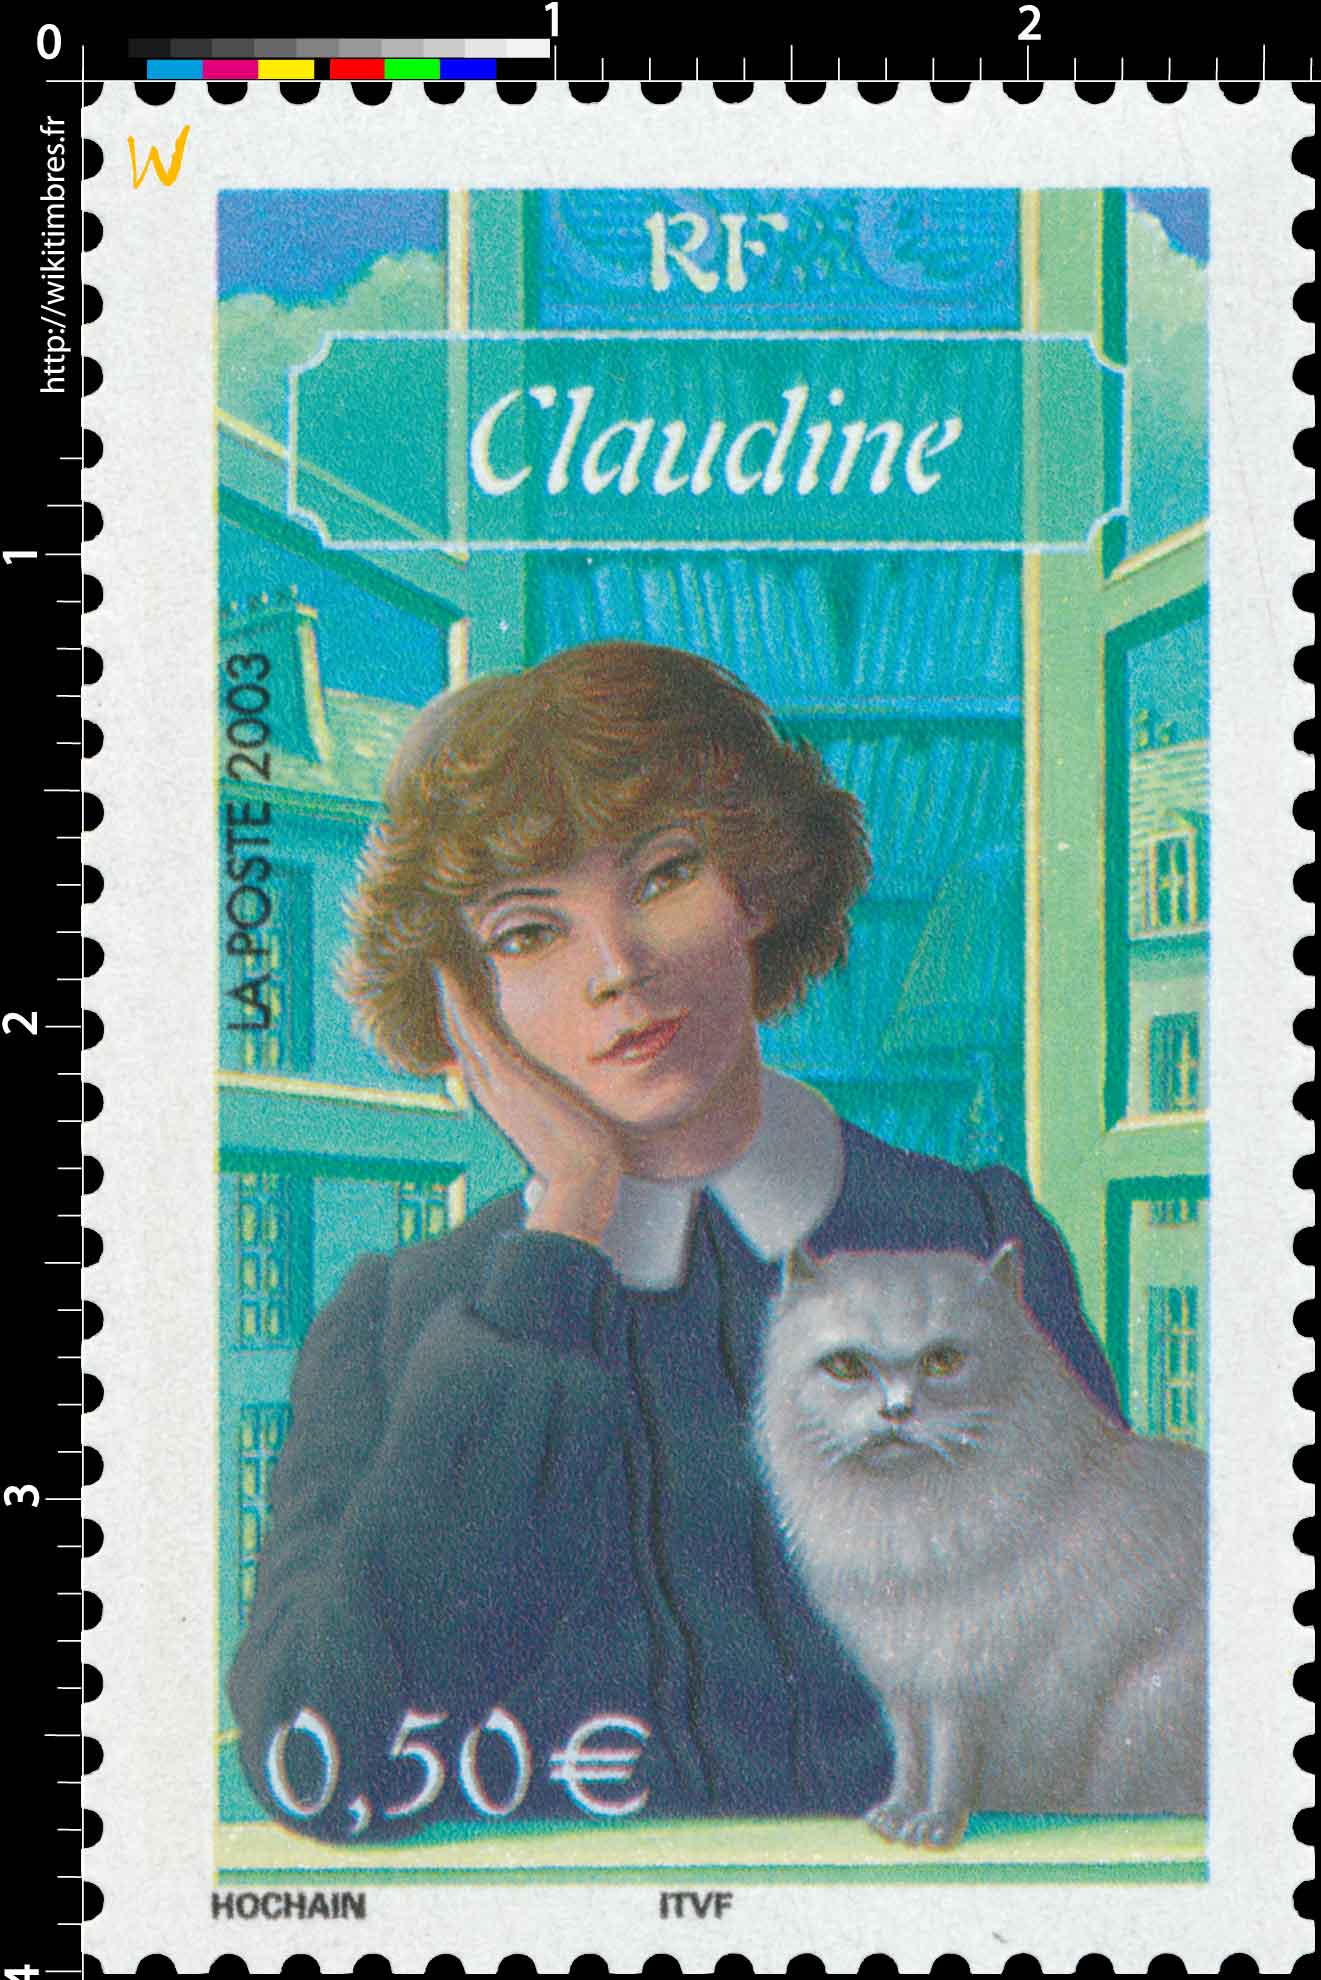 2003 Claudine